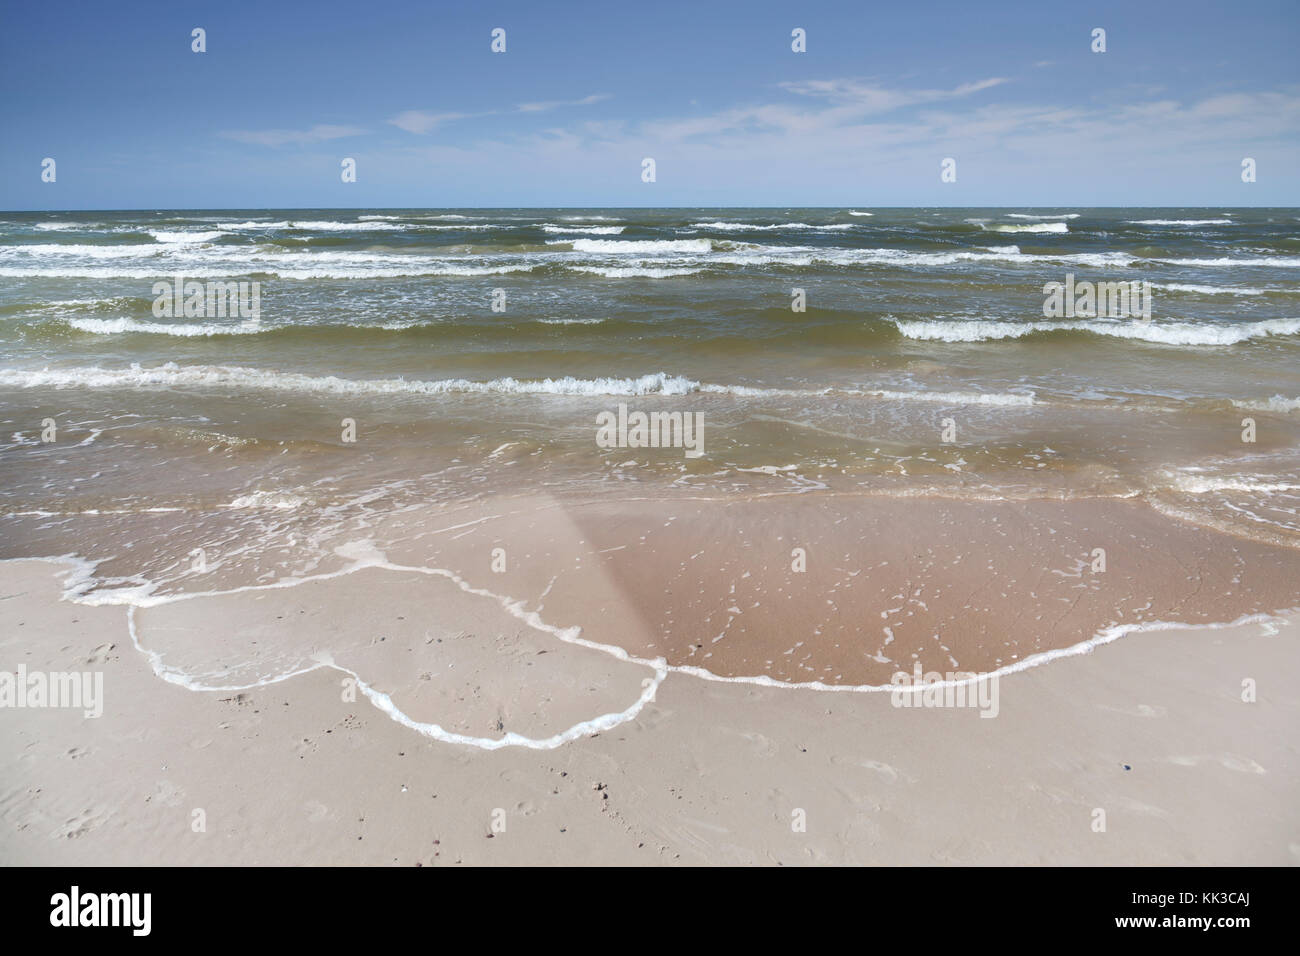 Cuore disegnato sulla spiaggia di sabbia - Vacanza Amore - lunga relazione di distanza - Concetto Foto Stock